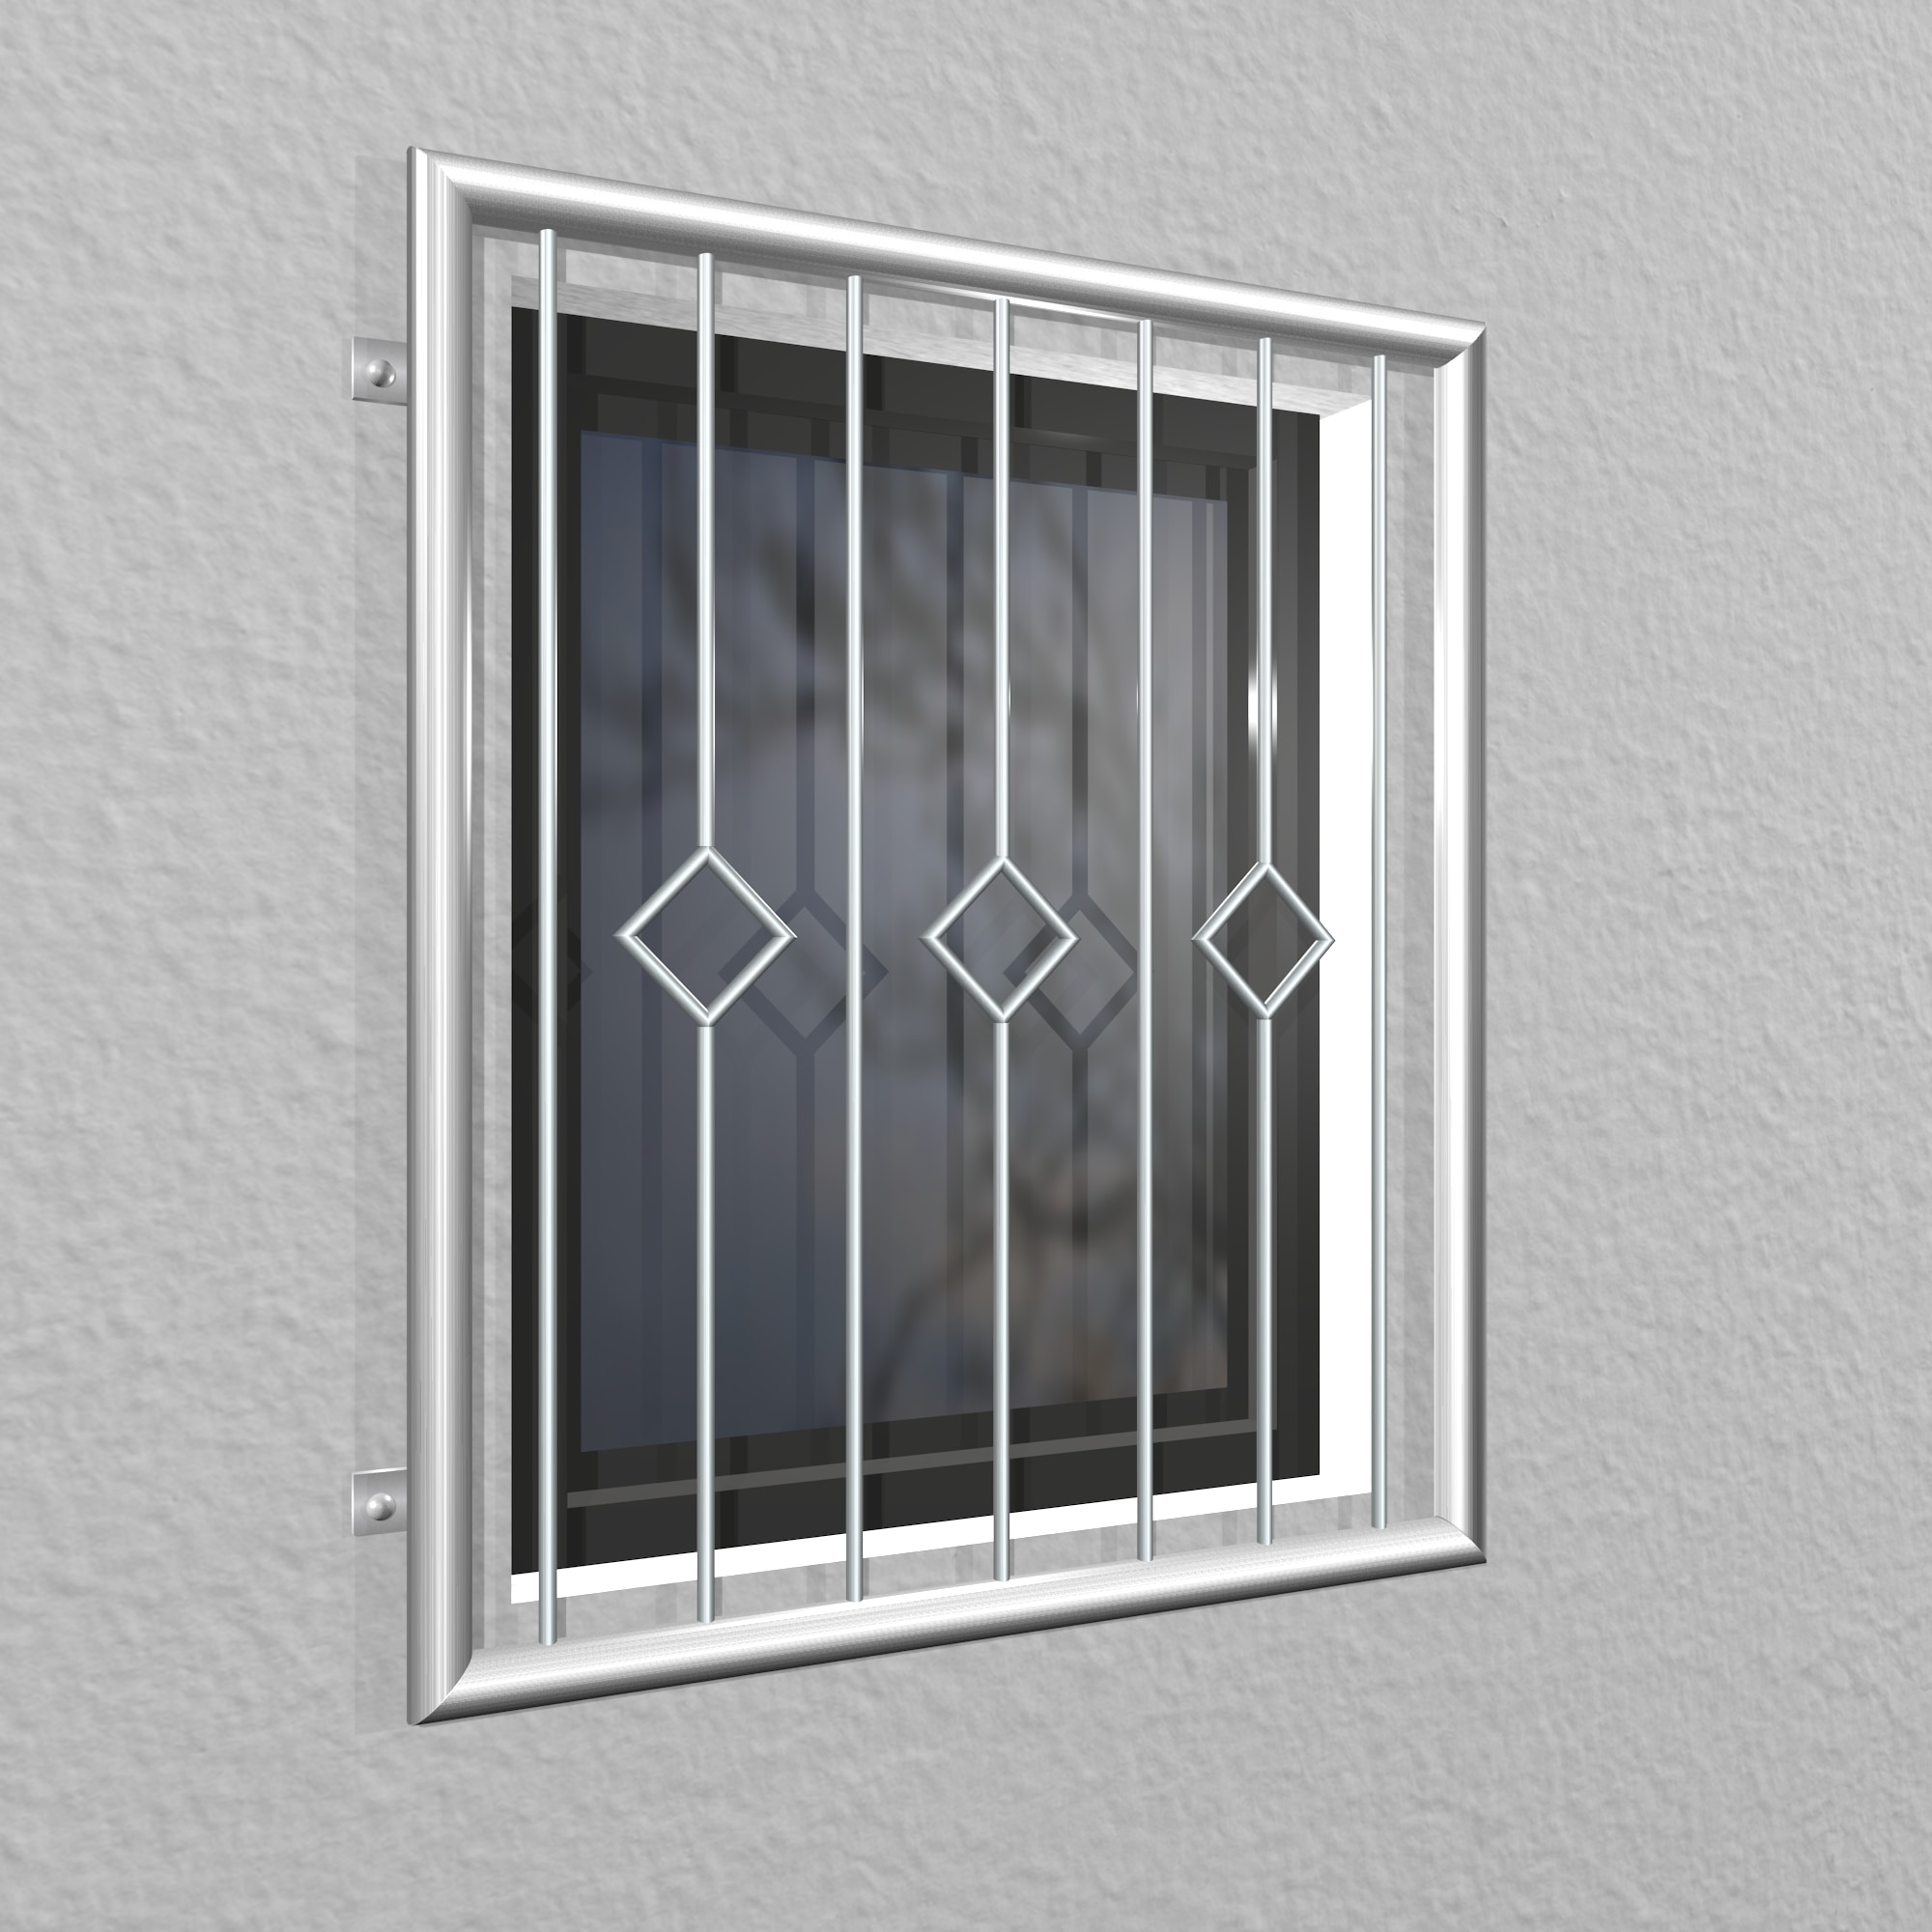 Grille de défense pour fenêtres en acier inoxydable carreau barre 